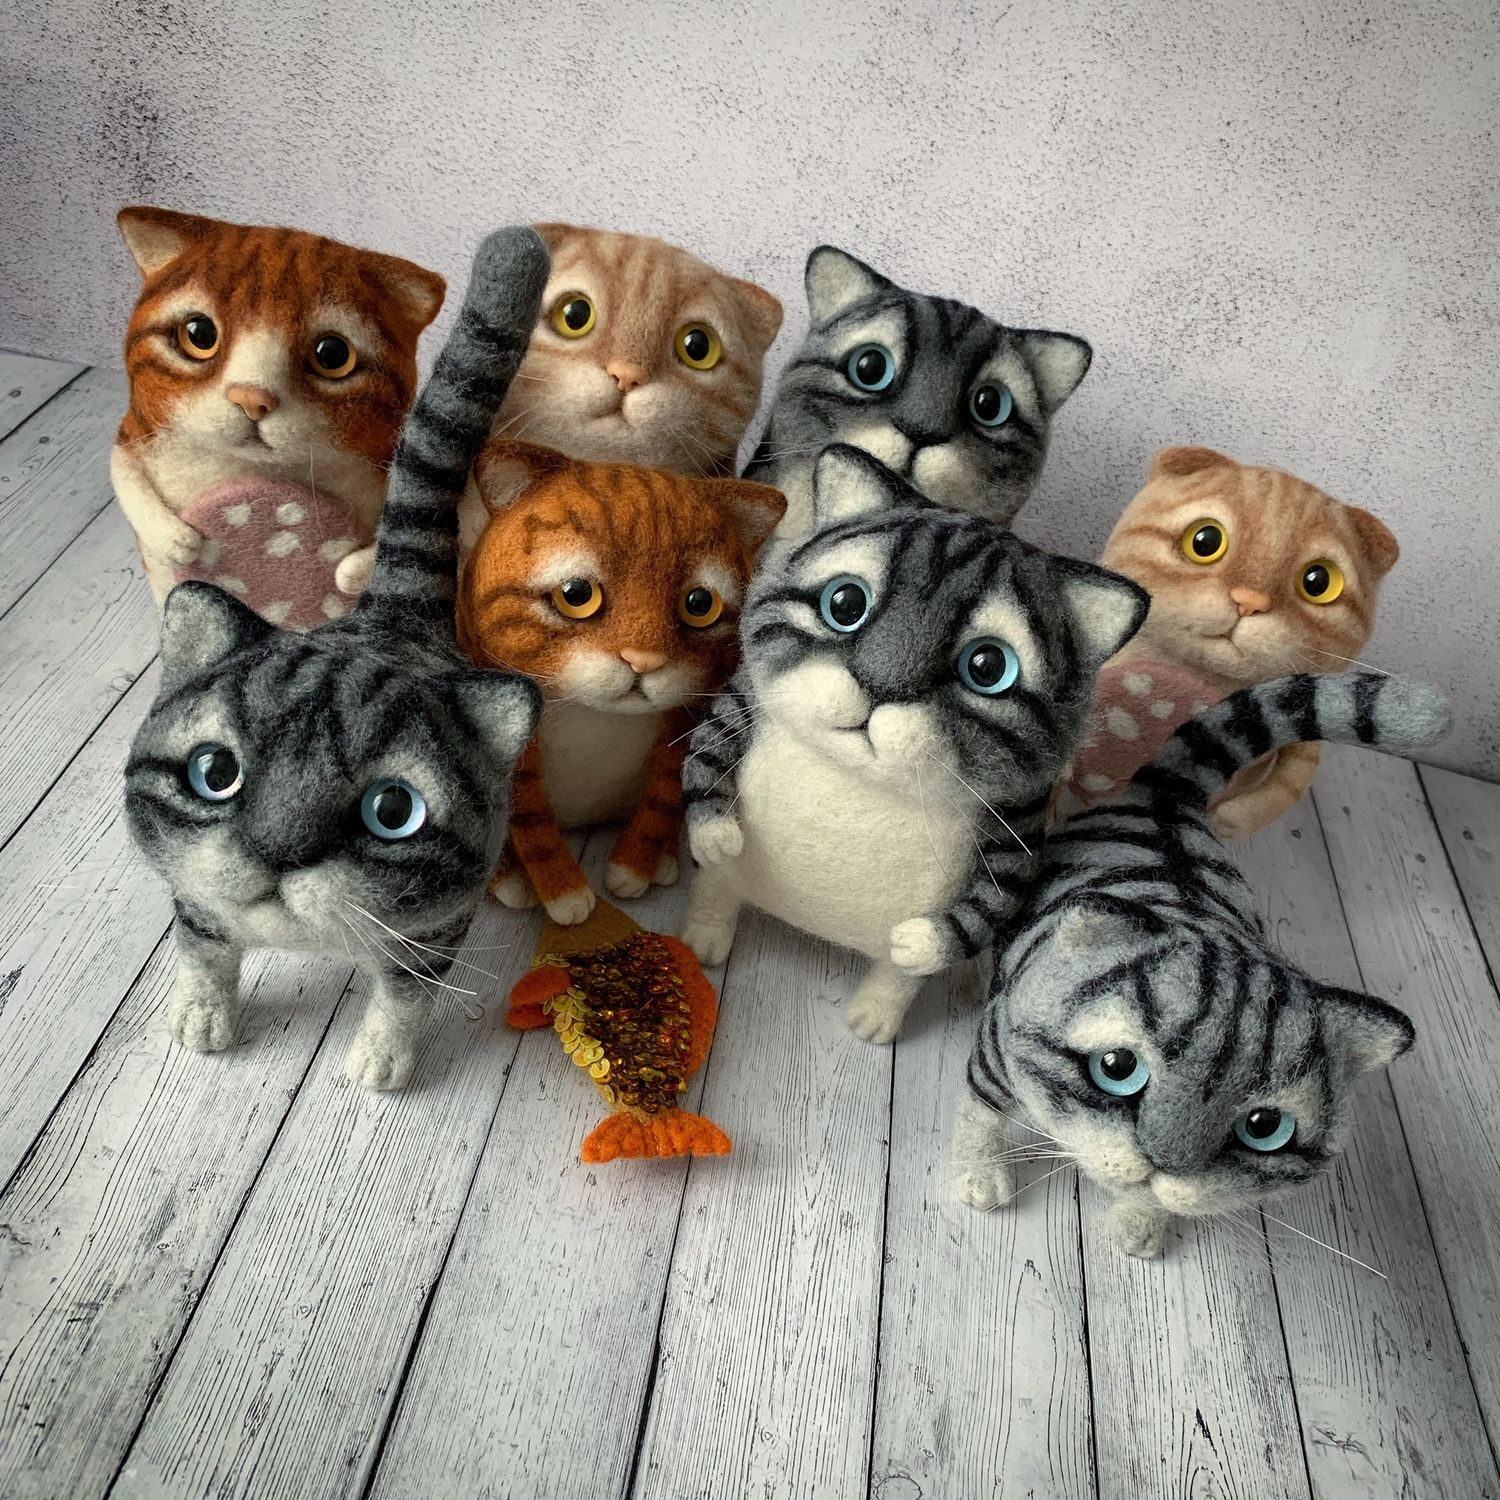 Авторские игрушки Елены Смирновой - Коты, котики, котята и котэ. Валяные игрушки своими руками